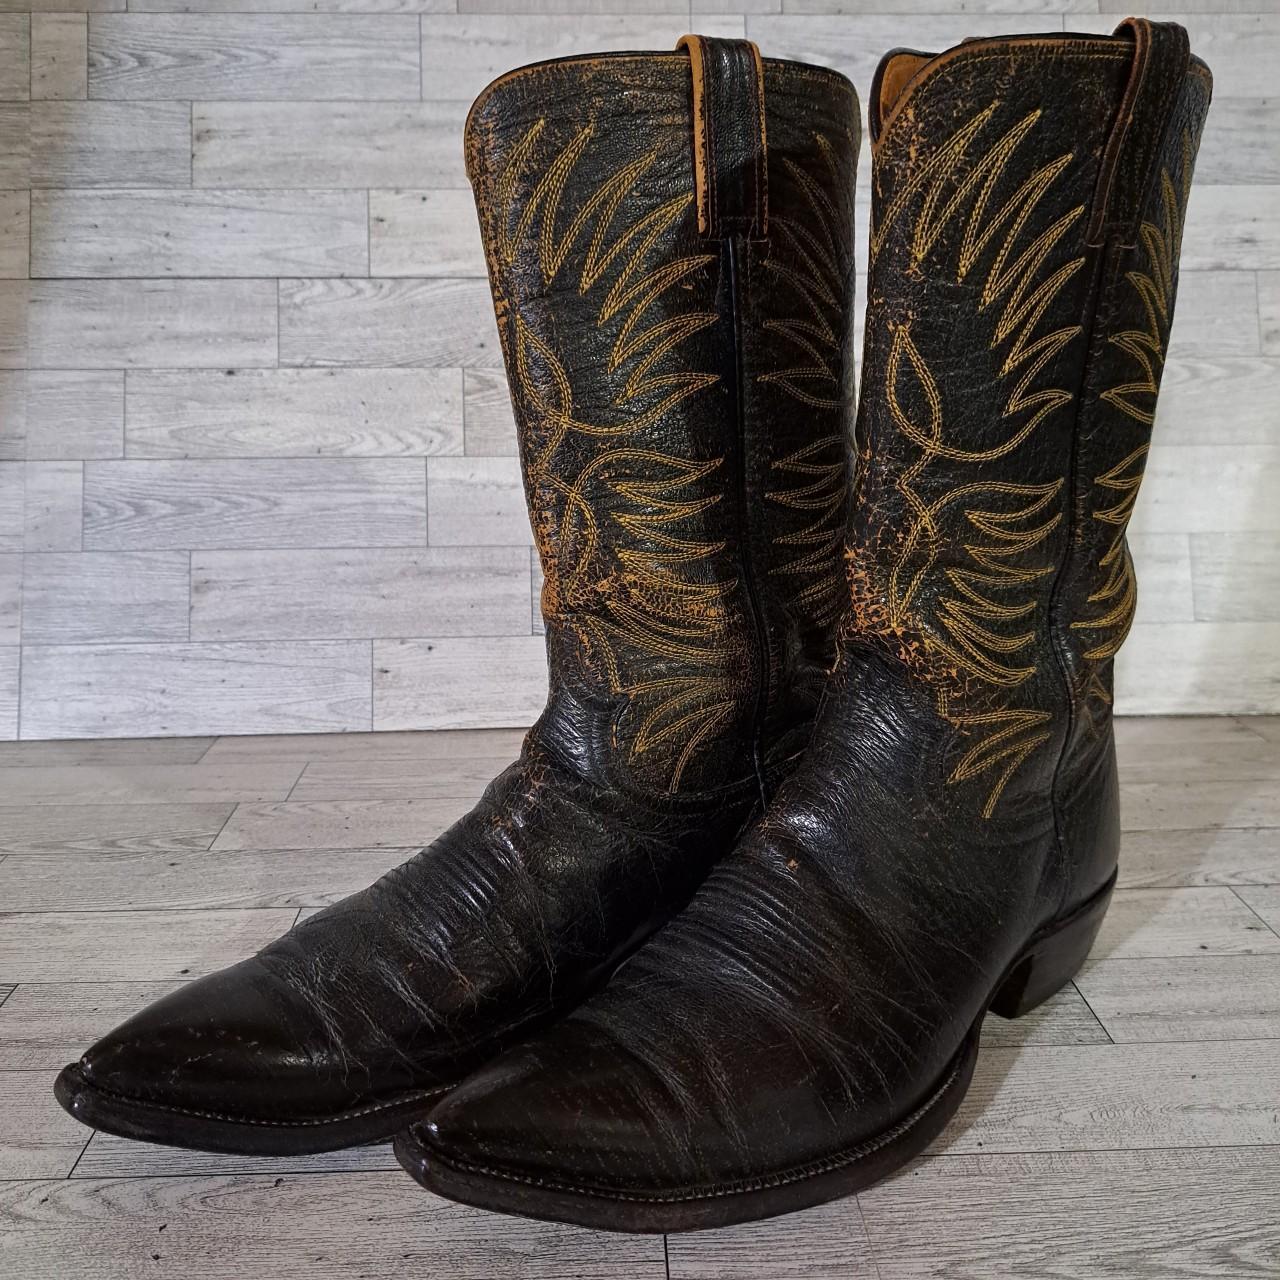 Men's Vintage Justin Handmade Leather Cowboy Boots... - Depop